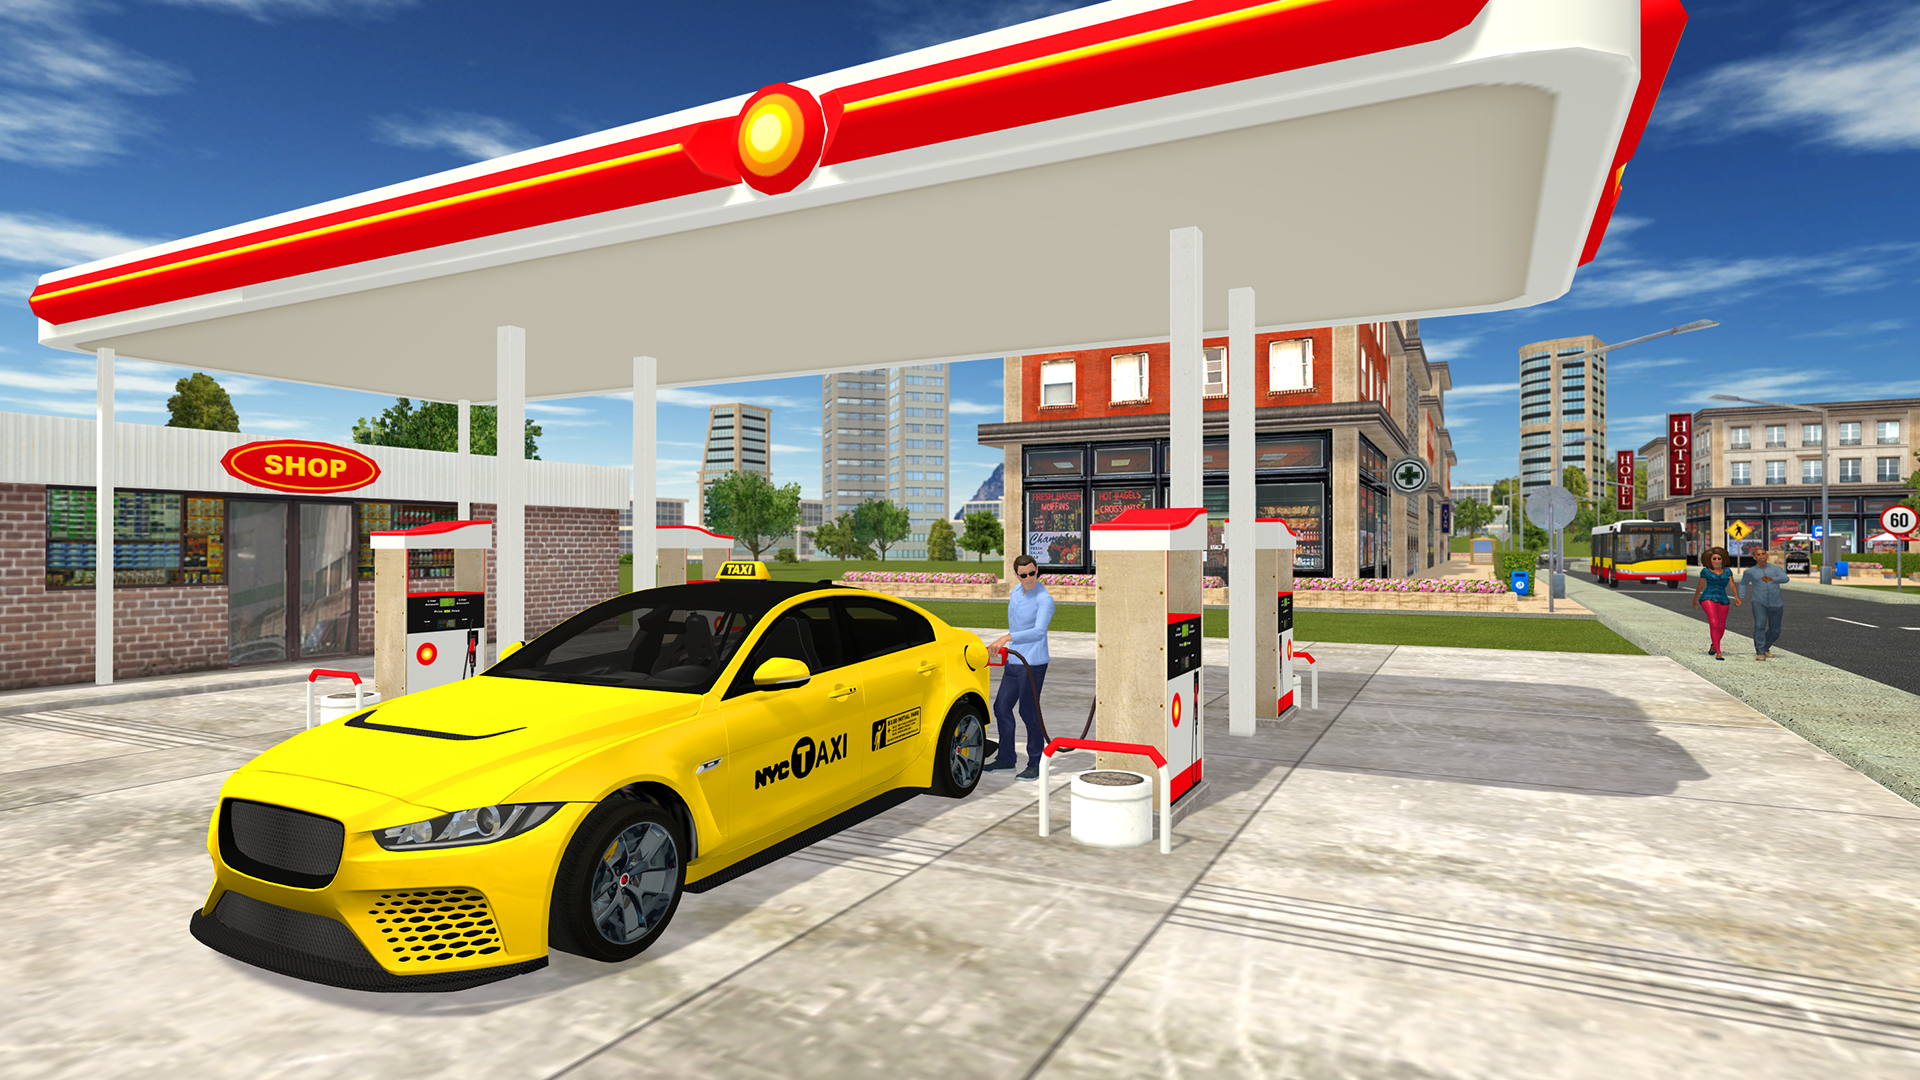 Screenshot 1 of trò chơi taxi 